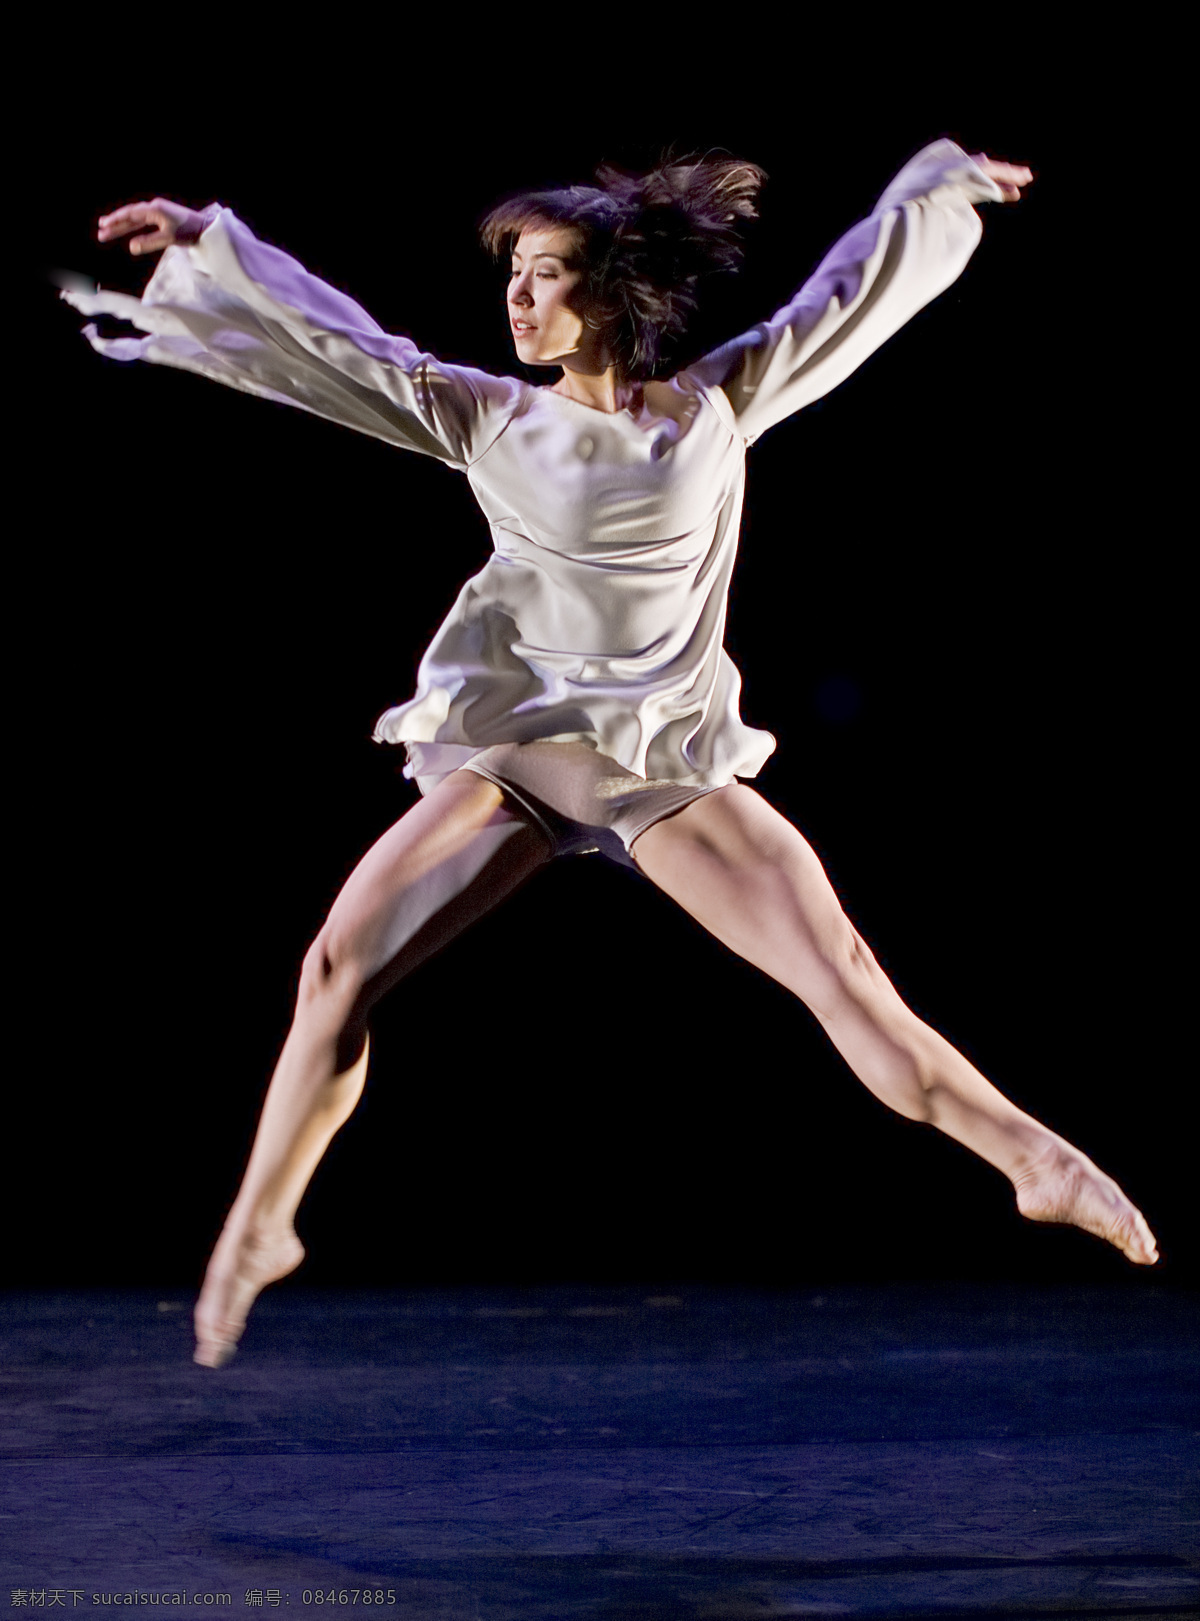 飞跃的灵魂 舞蹈 跳跃 舞台 艺术 姿势 视觉 舞蹈音乐 文化艺术 黑色